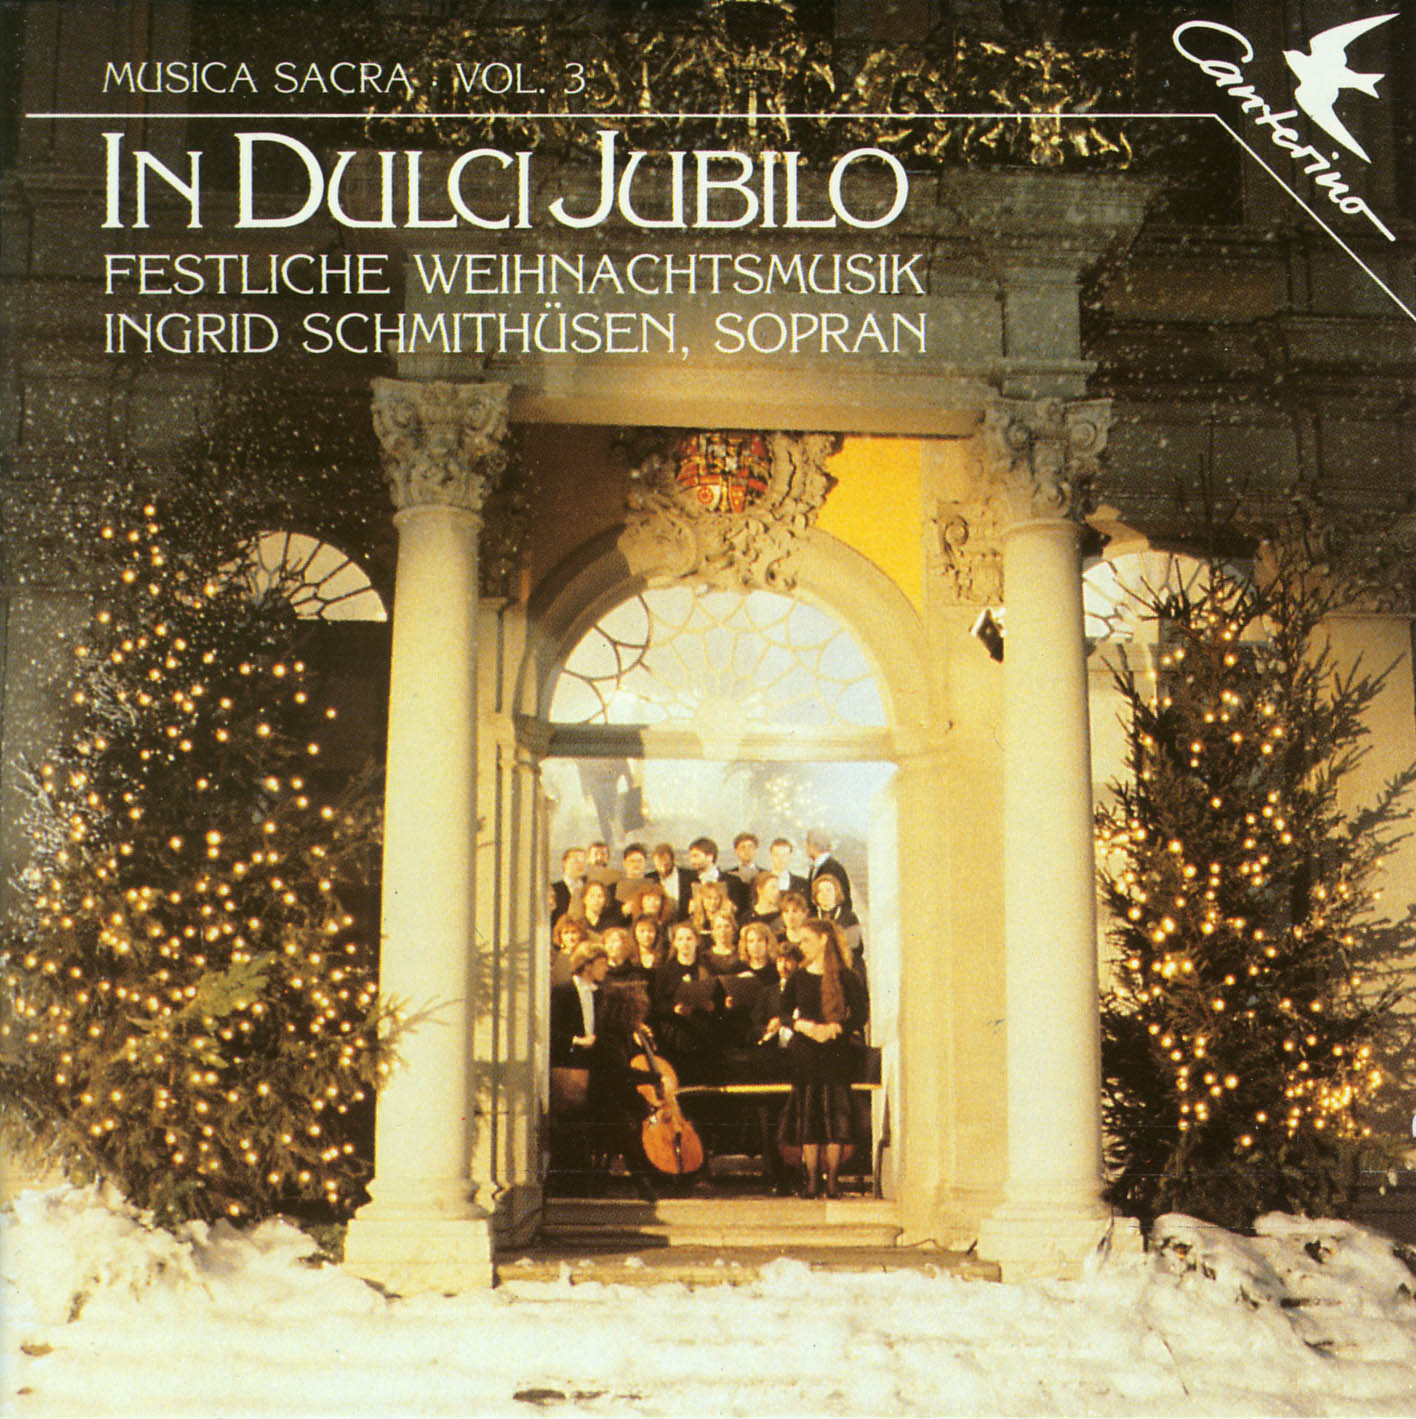 Musica sacra Vol. 3: &quot;In dulci jubilo&quot; Festliche Weihnachtsmusik